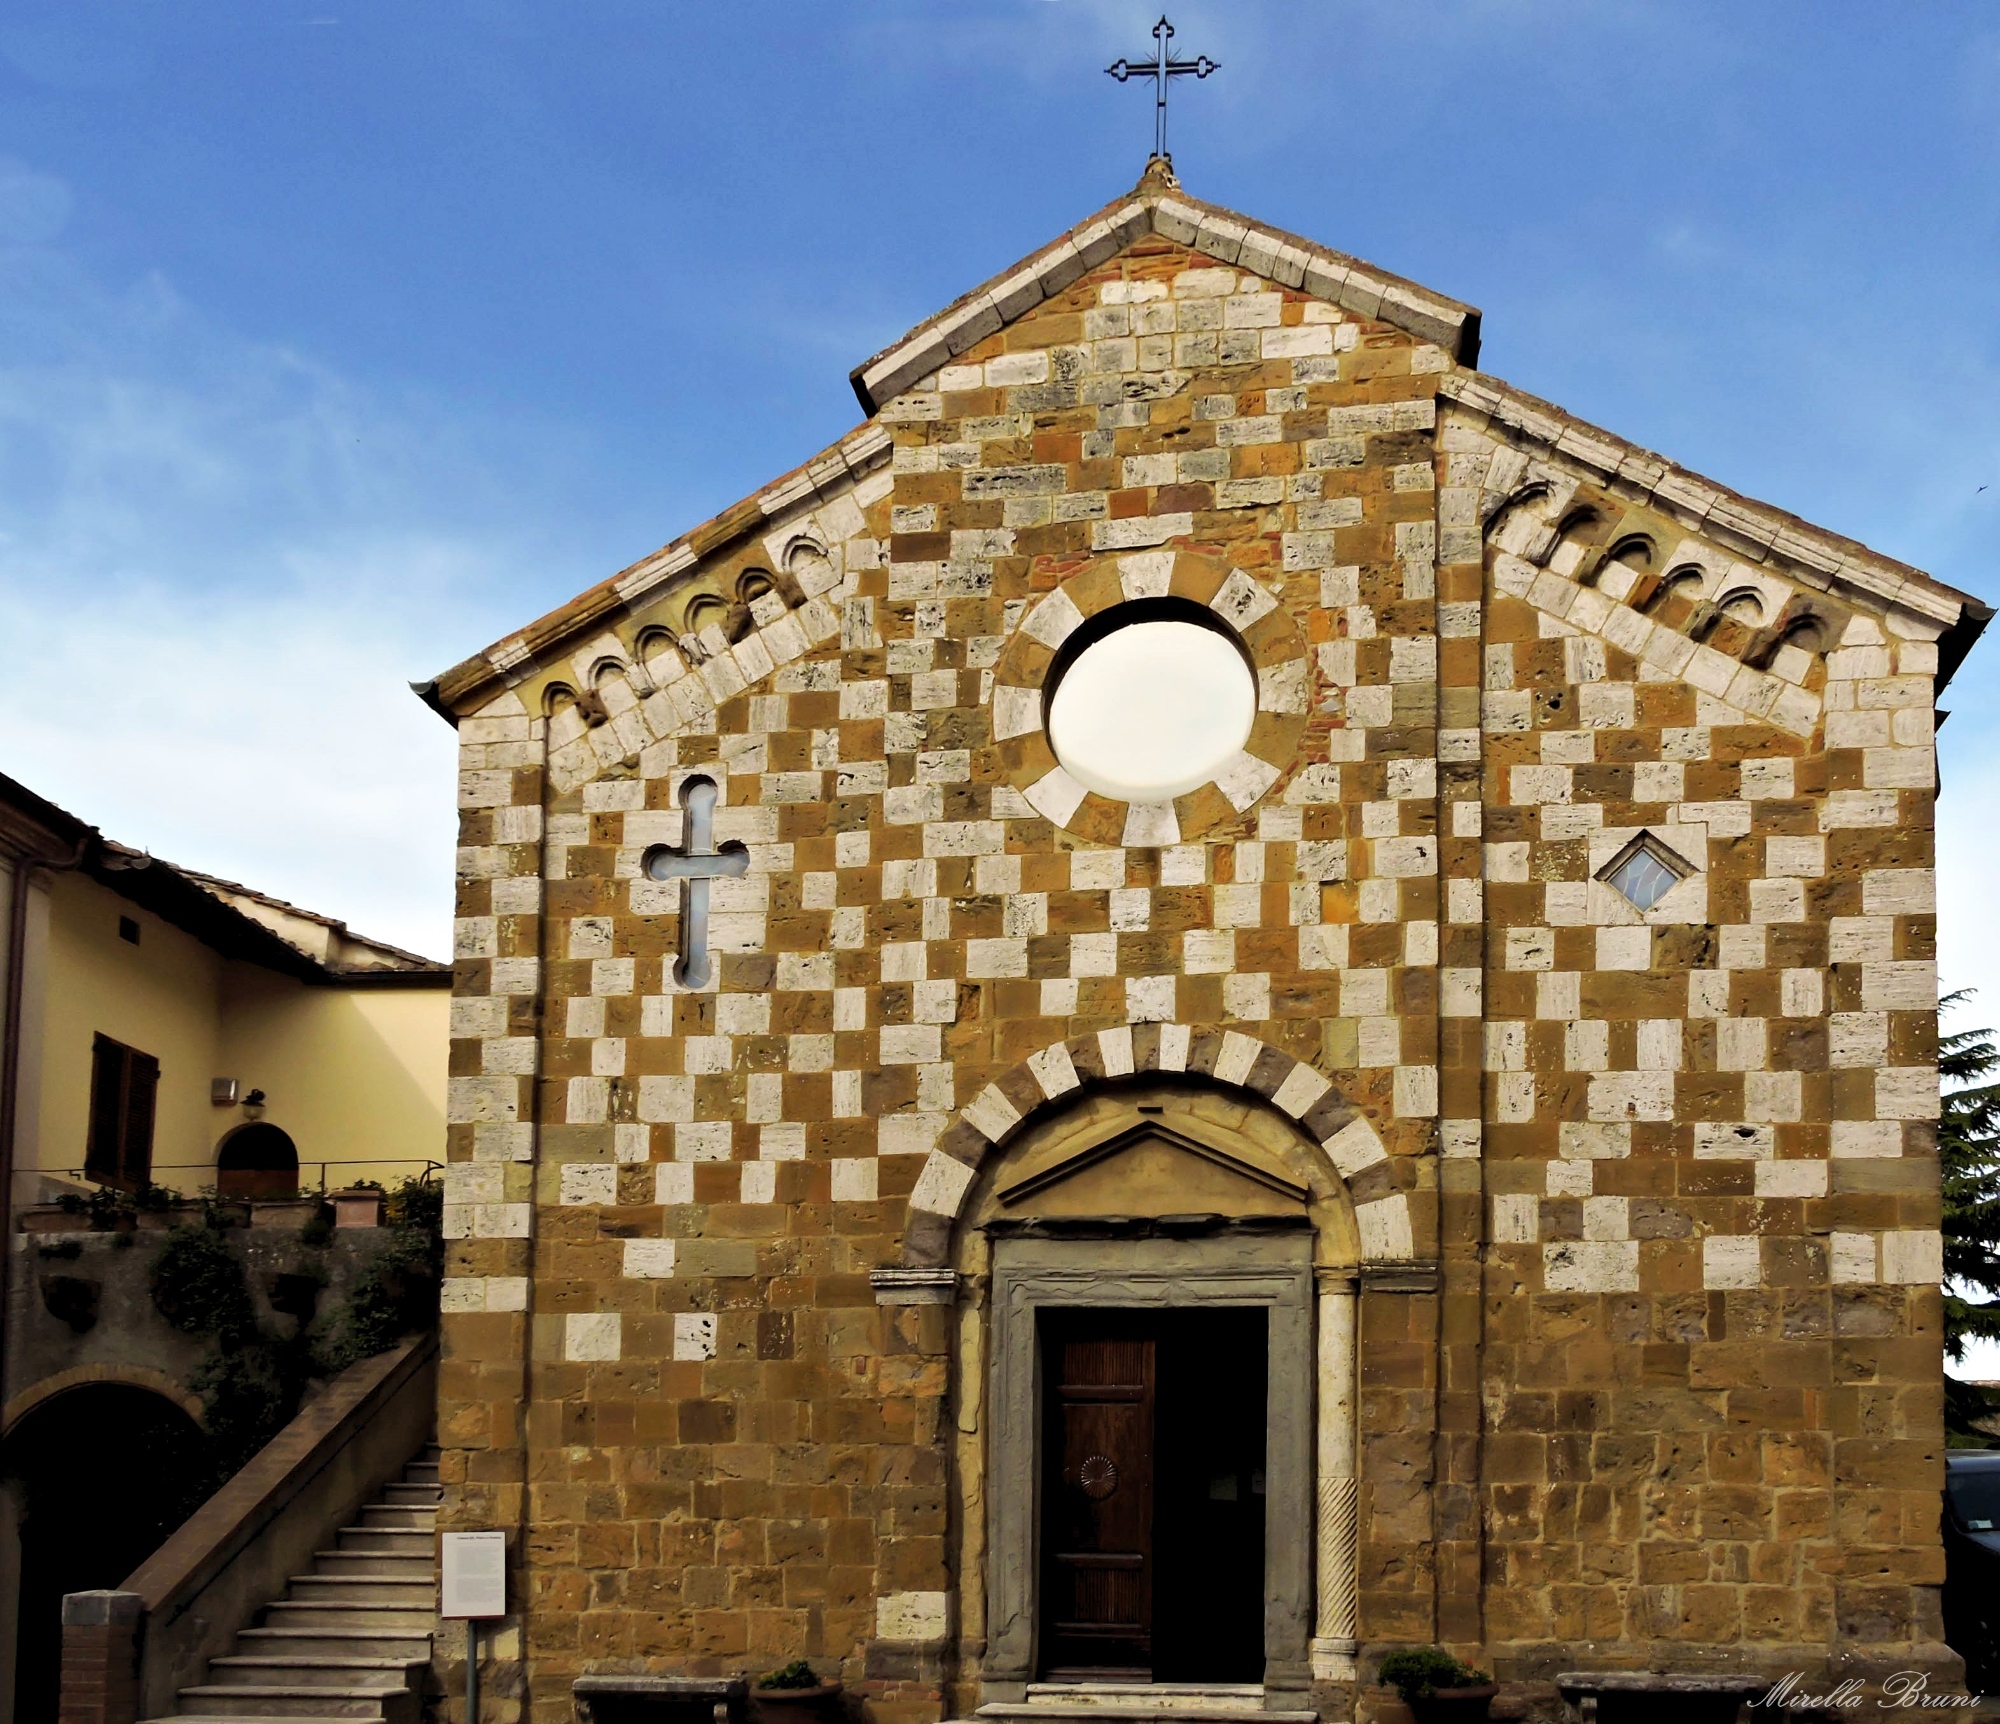 Santi Pietro e Andrea church in Trequanda